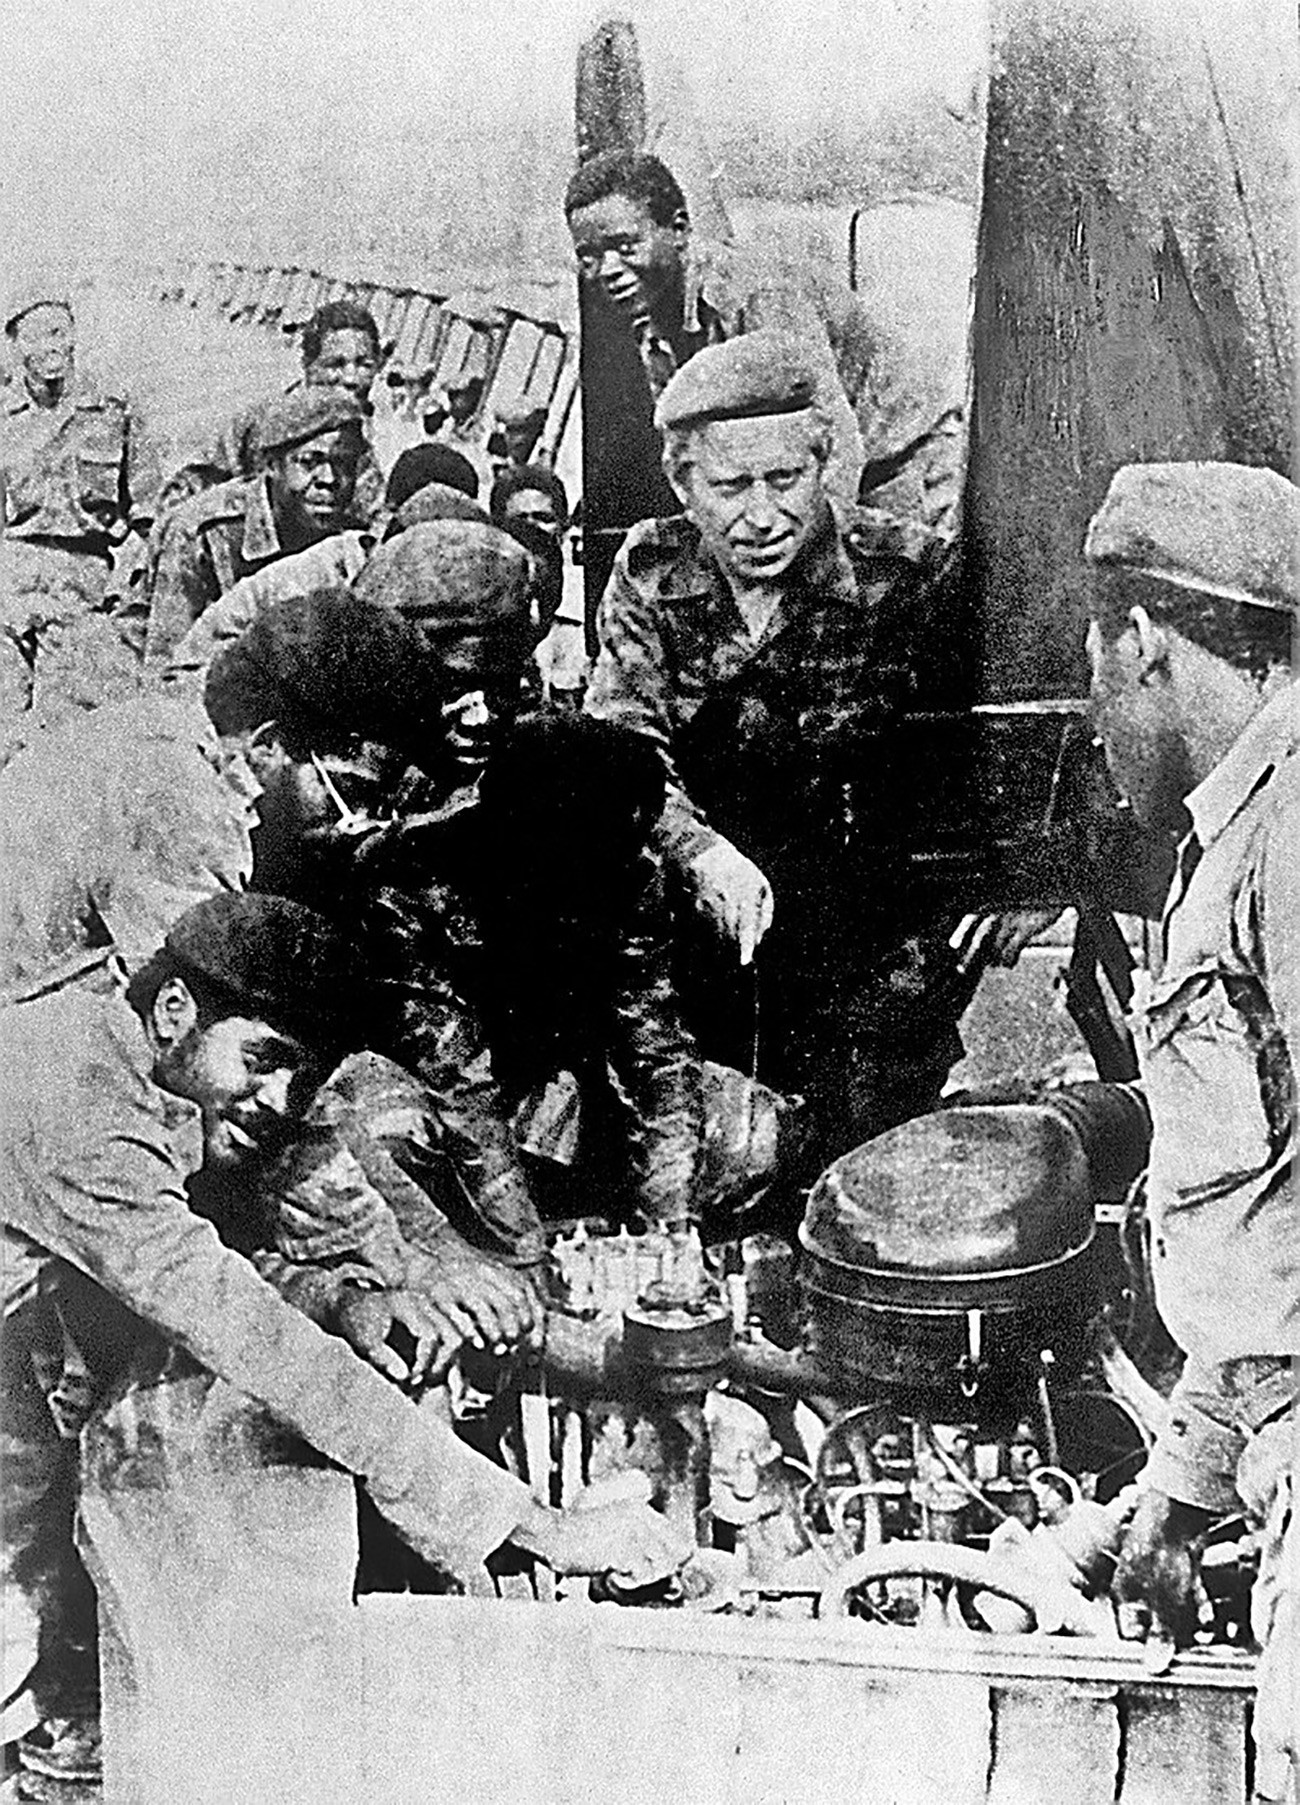 ソ連兵が戦った外国の紛争9選 ロシア ビヨンド